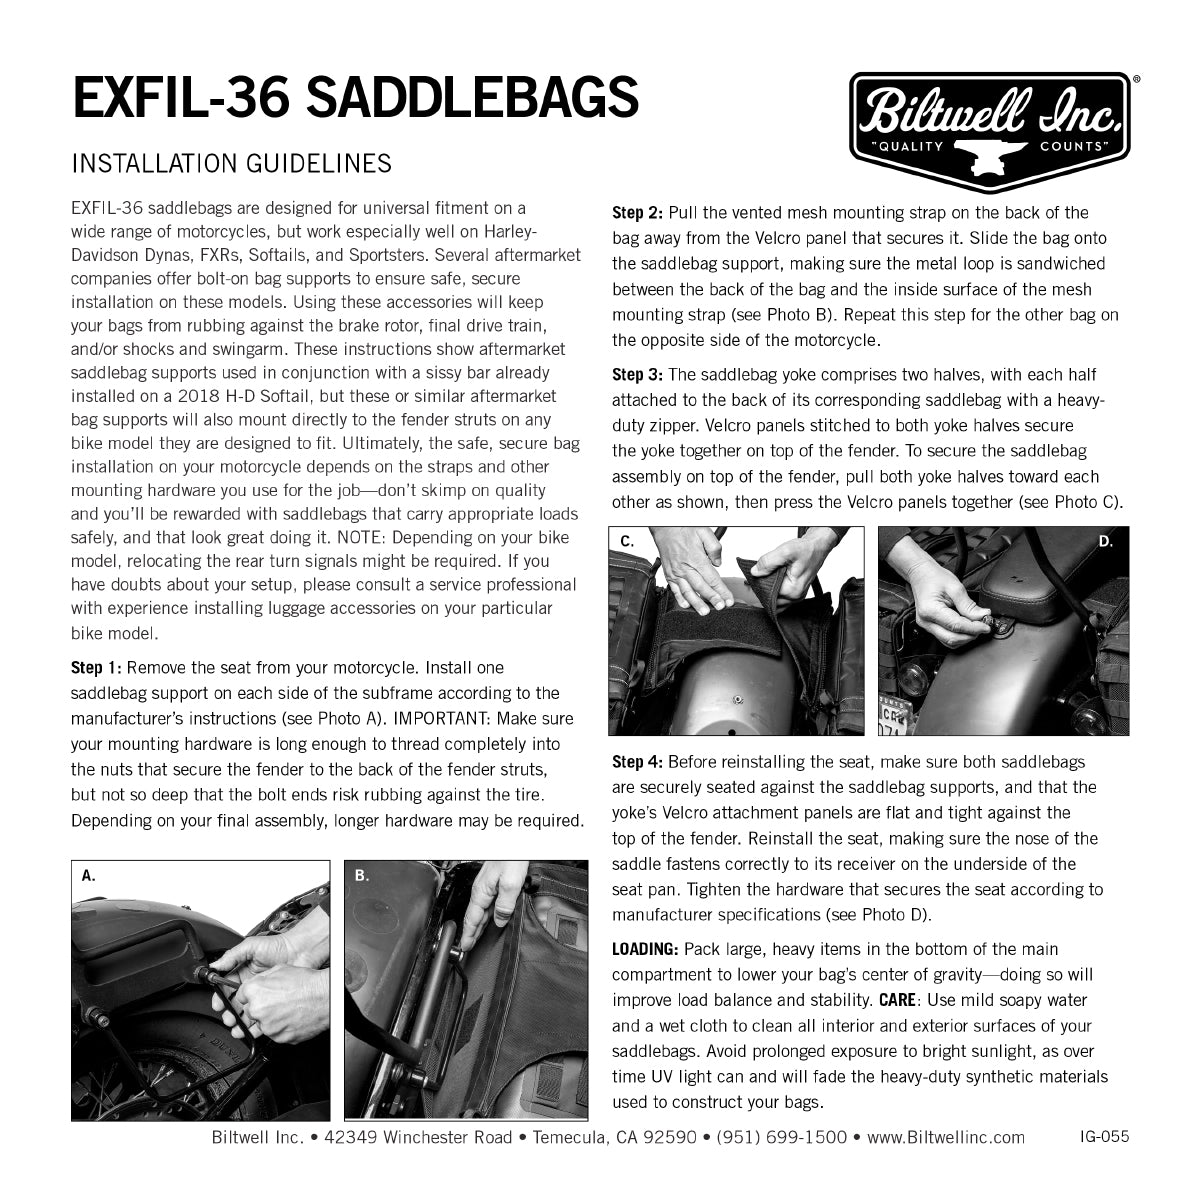 EXFIL-36 Saddlebags Black